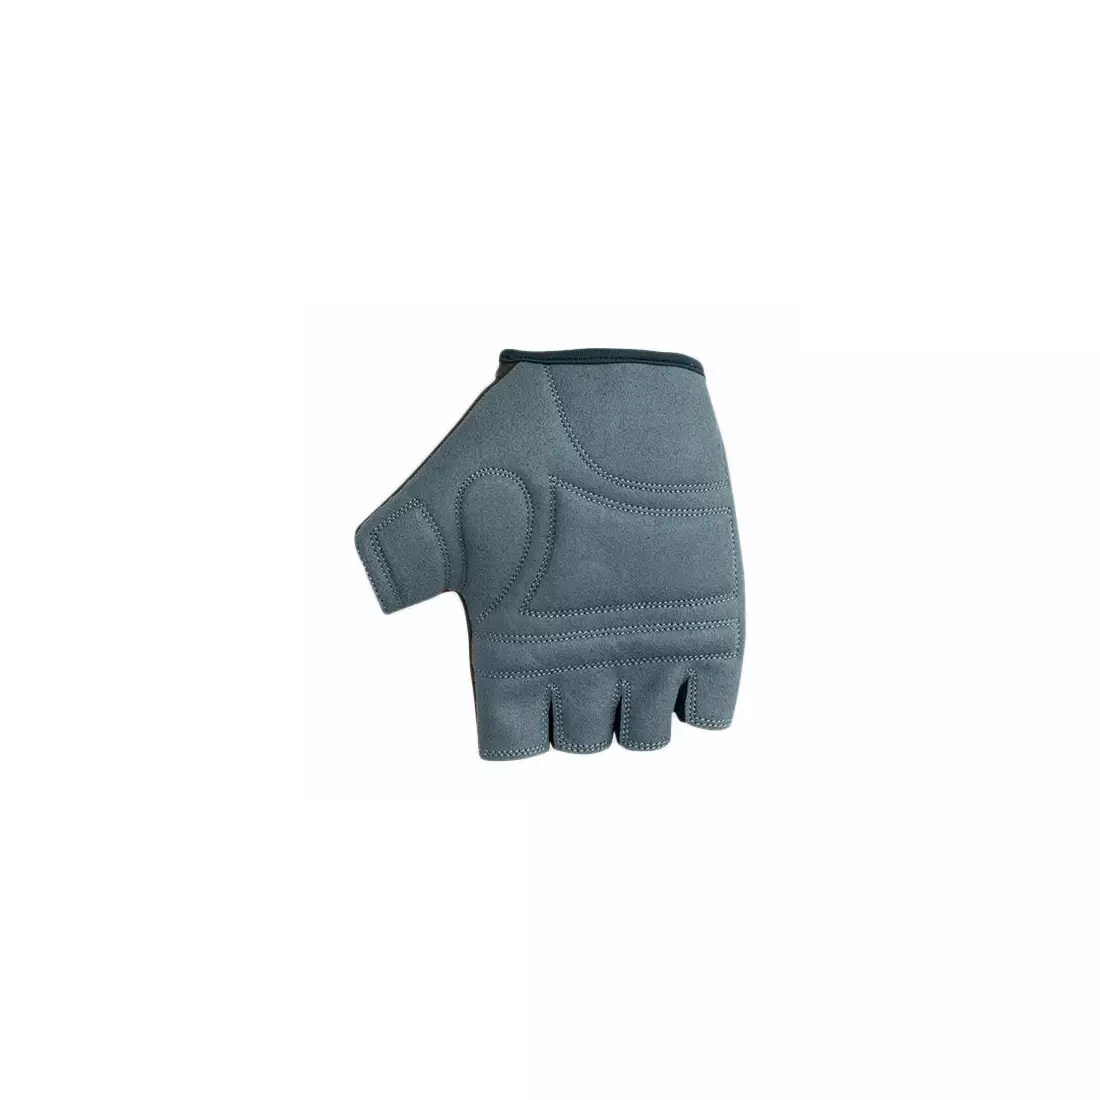 Mănuși POLEDNIK F4 NEW15, culoare: gri